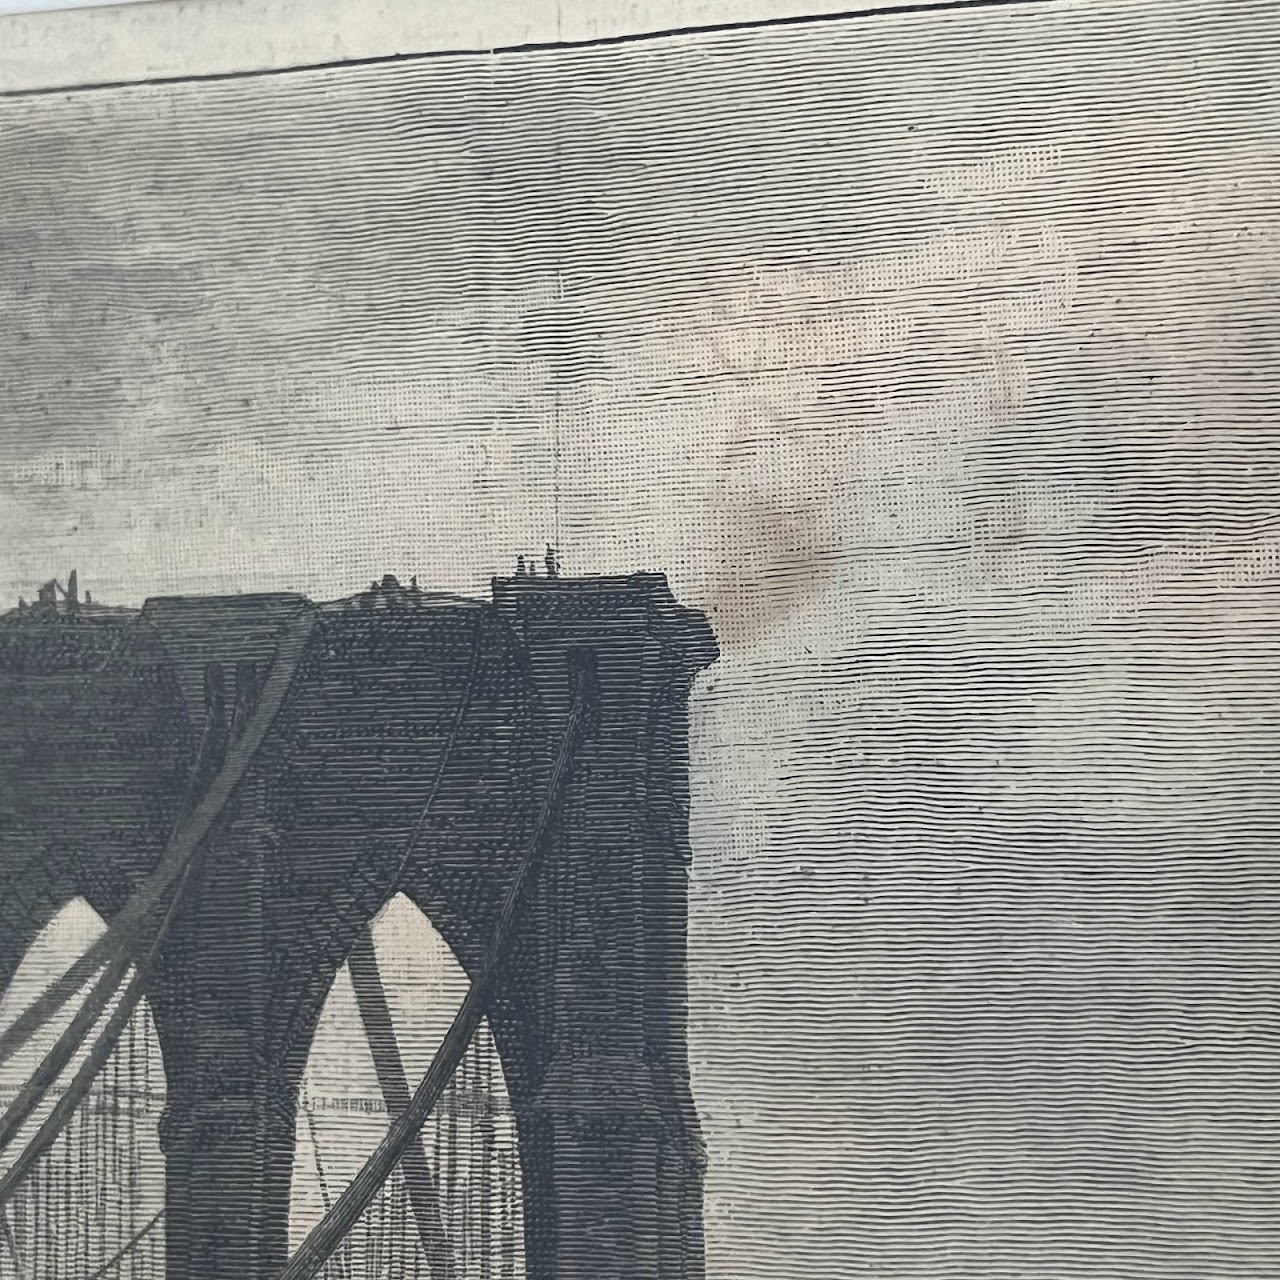 Brooklyn Bridge 19th C. Harper's Weekly Engraved Plate